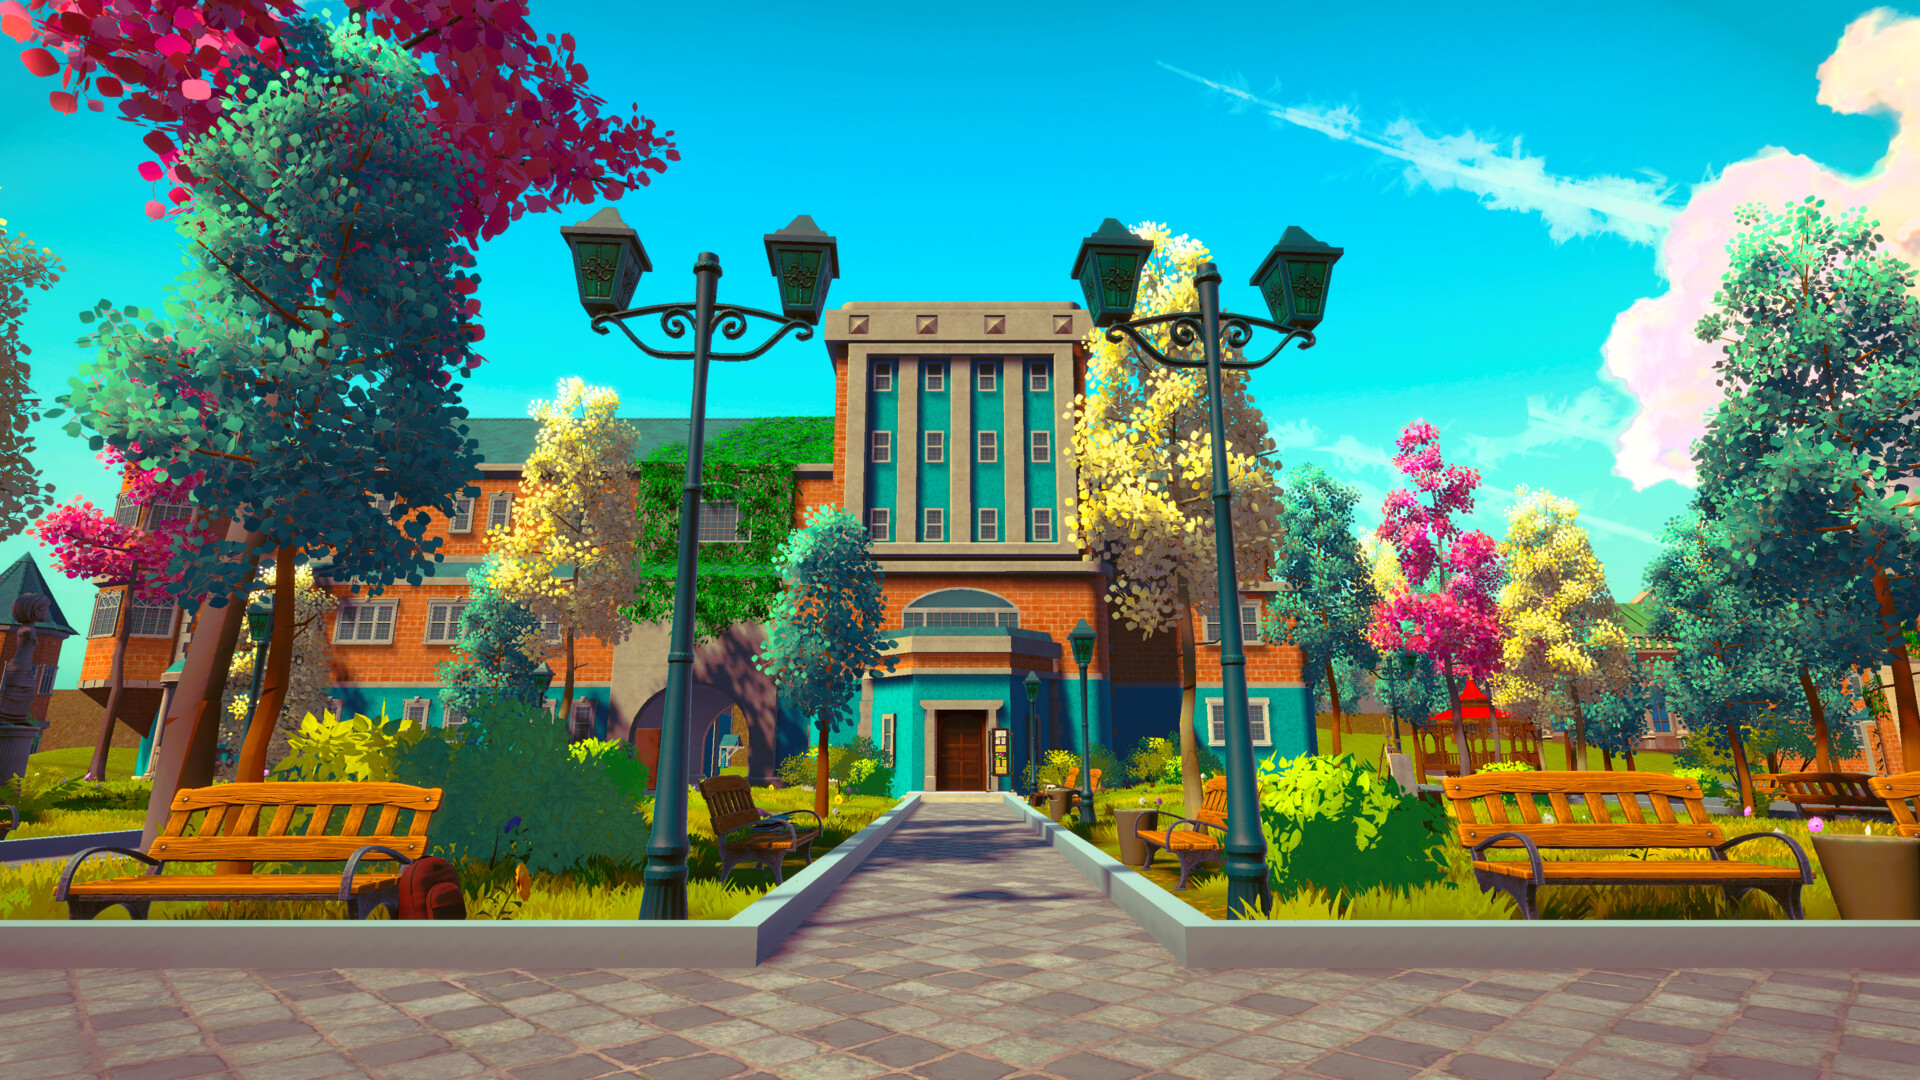 沉浸式模拟游戏《校园生活》现已登录Steam平台 6月推出试玩版